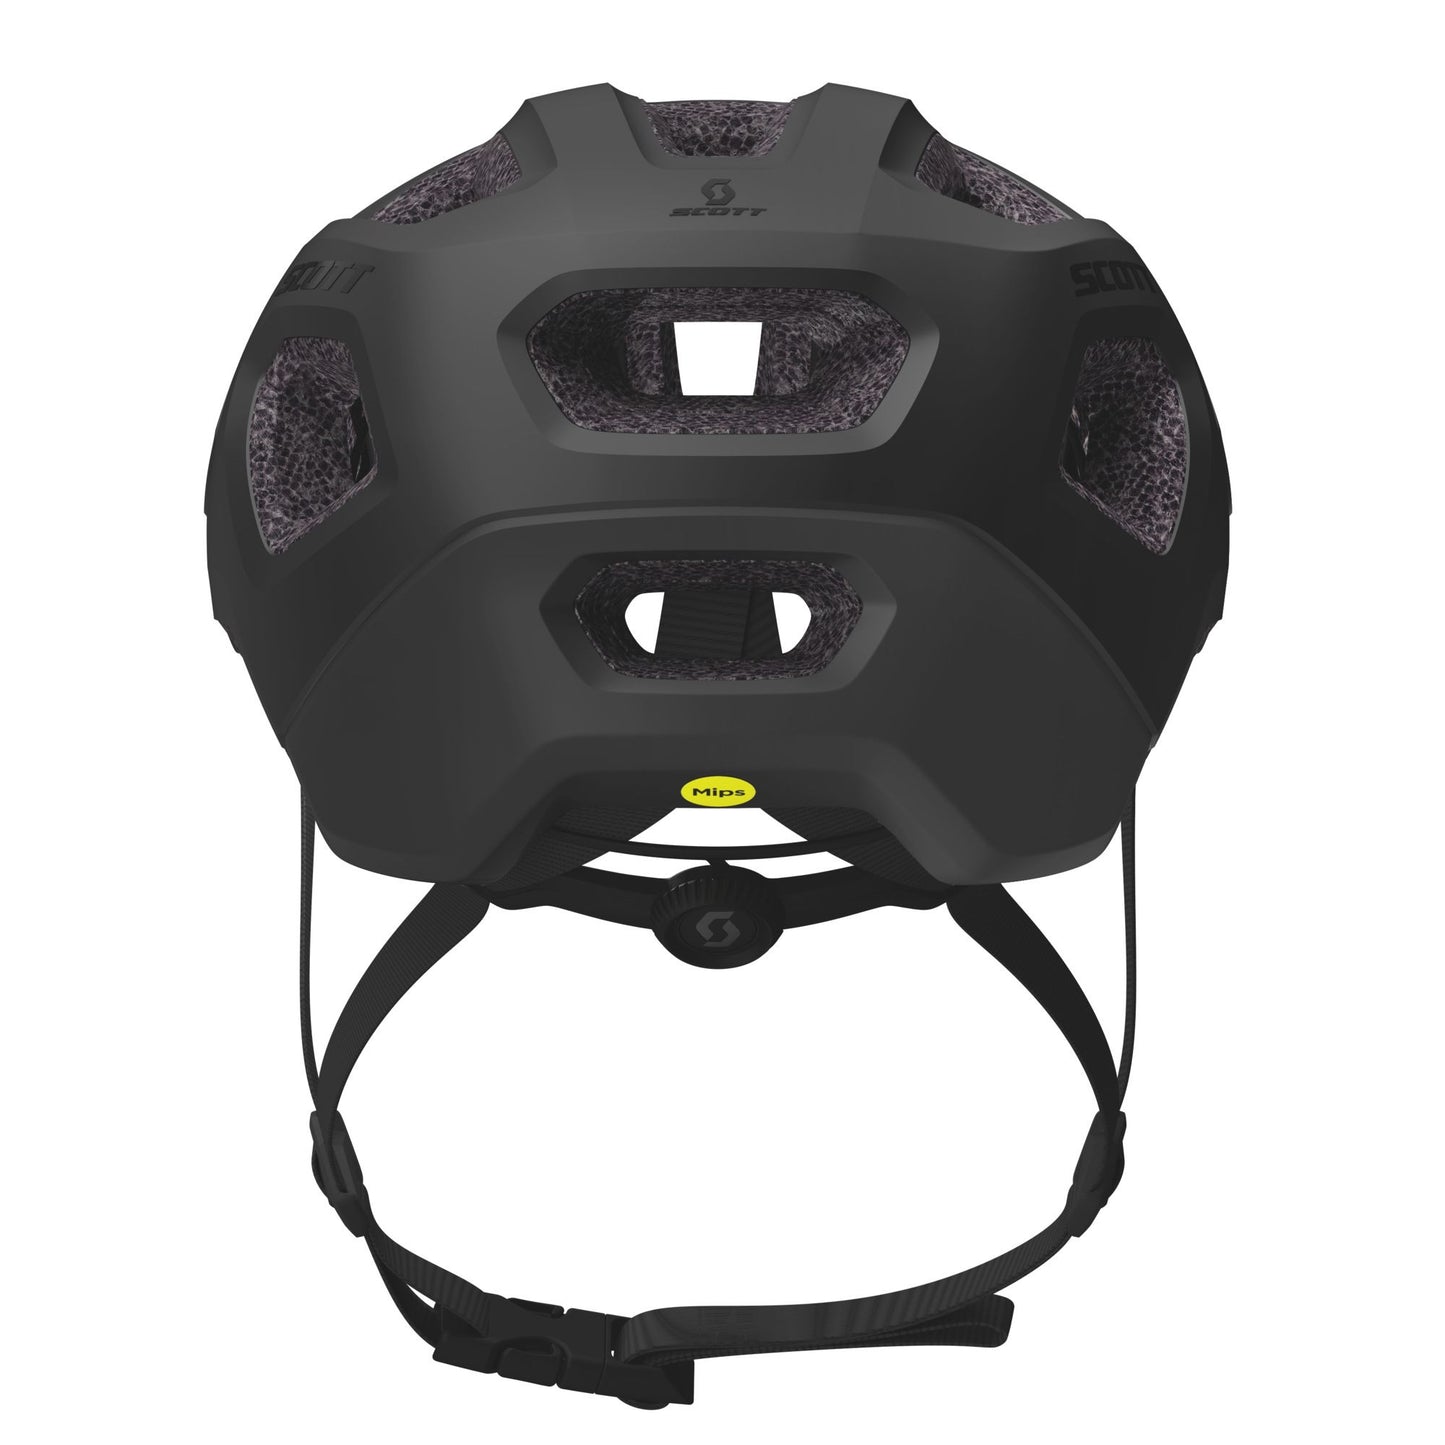 Casque Scott Argo Plus // Scott Argo Plus Helmet